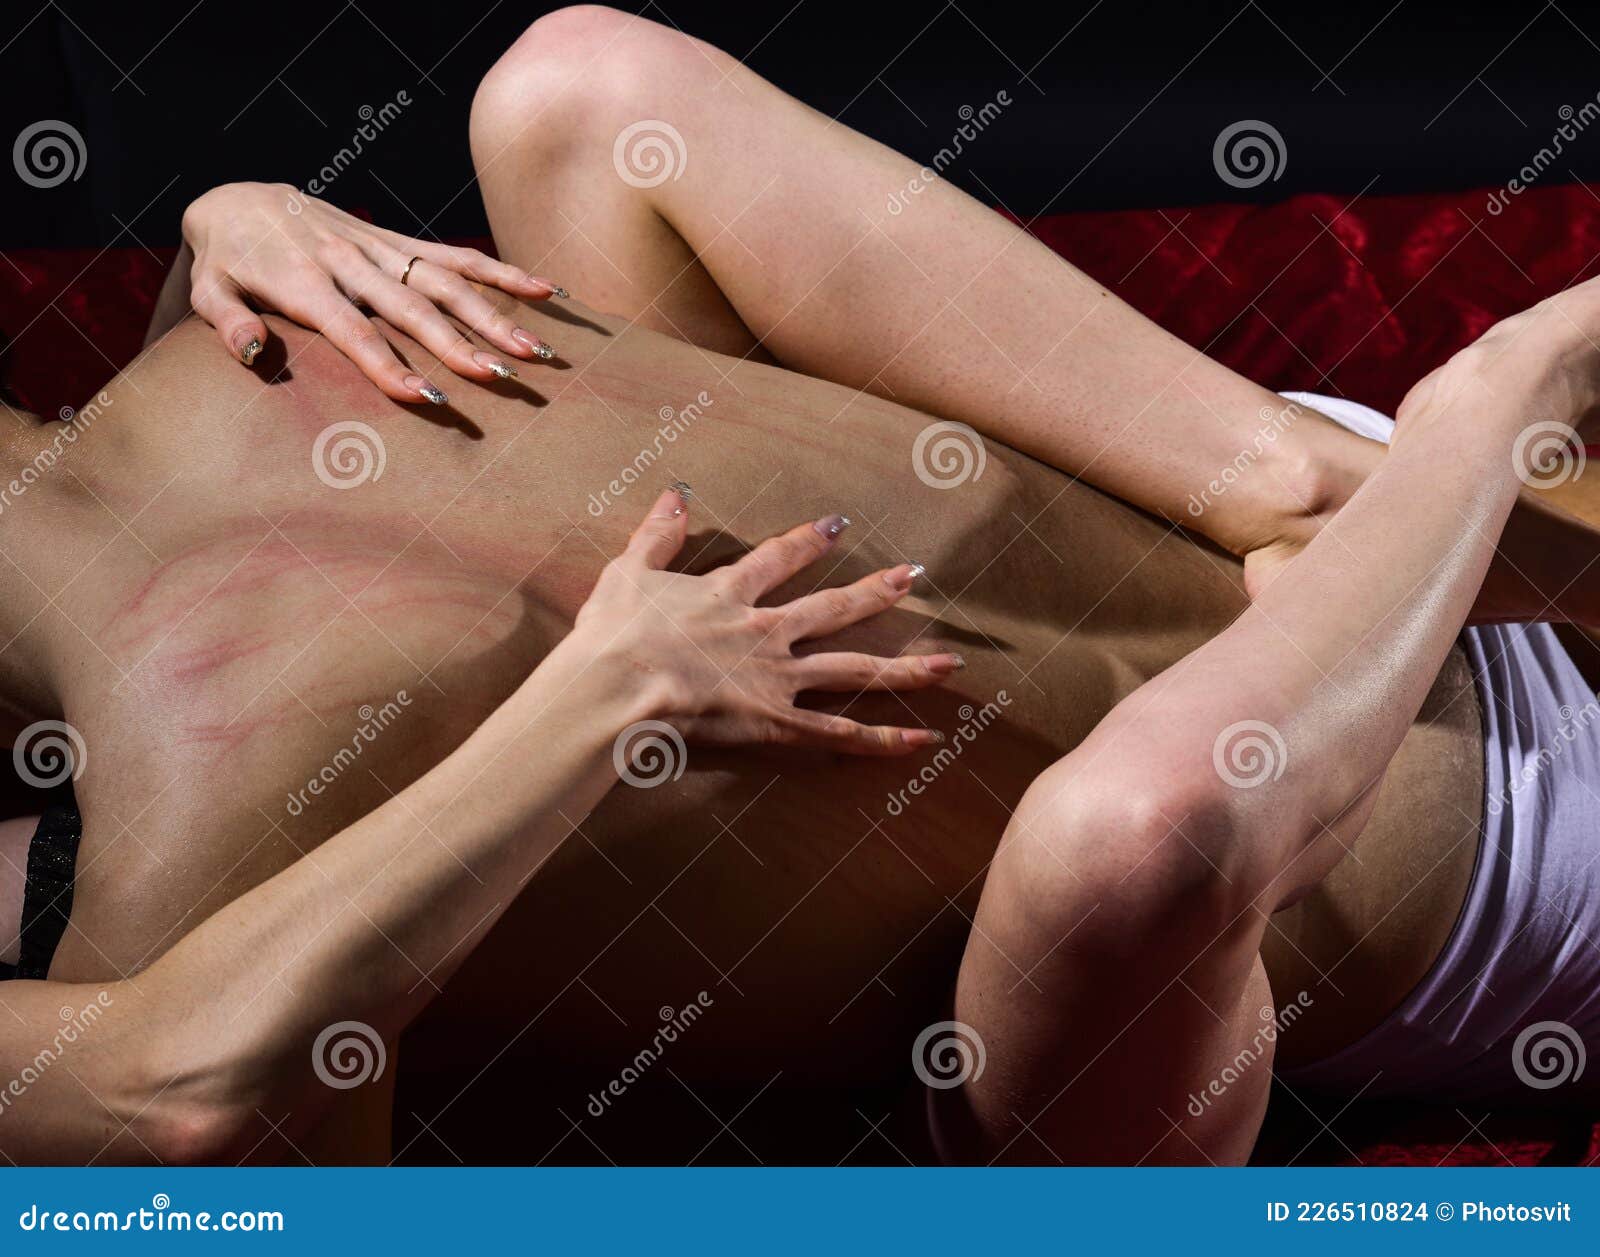 сексуальные фото голых мужчин